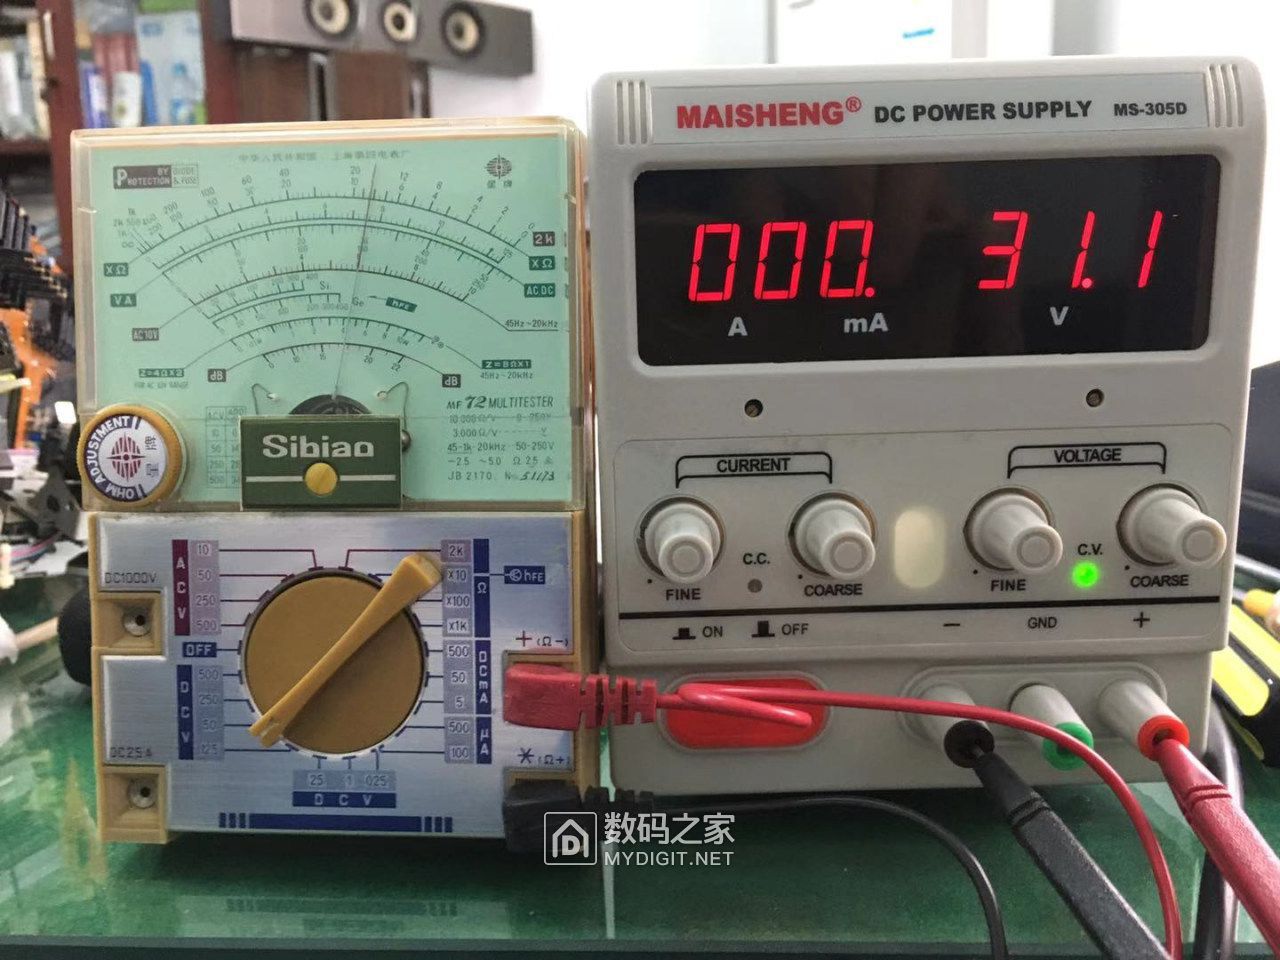 把电源输出电压调到最大，电源上电压显示比电表高1.1V，微调面板上电压小孔没变化。 ... ...